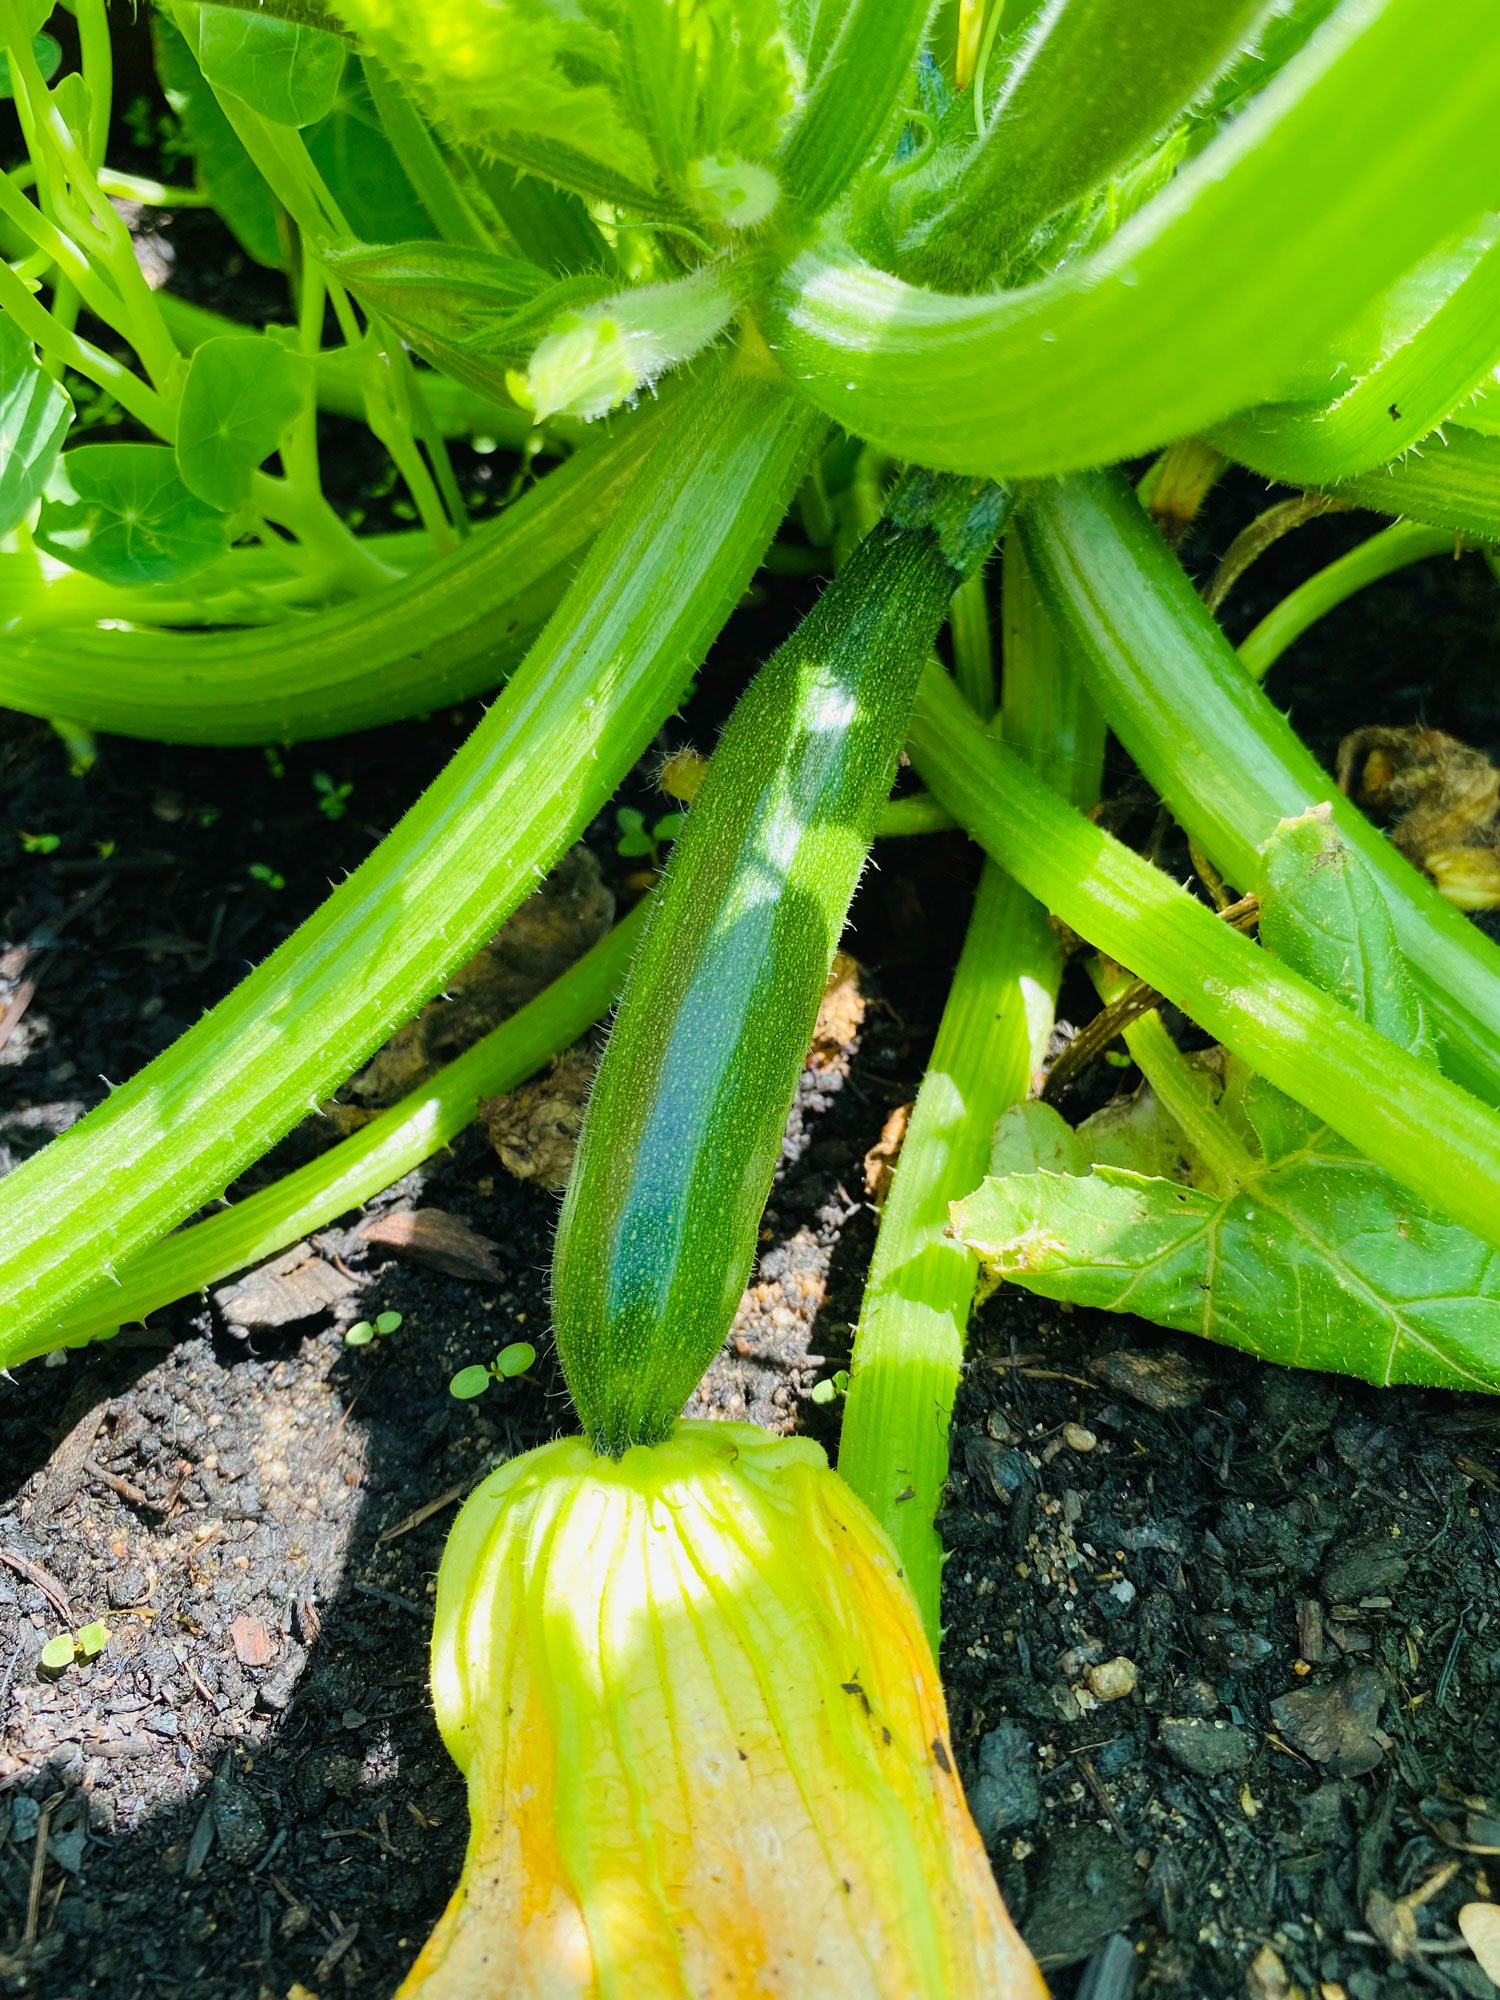 zucchini in the vegetable garden